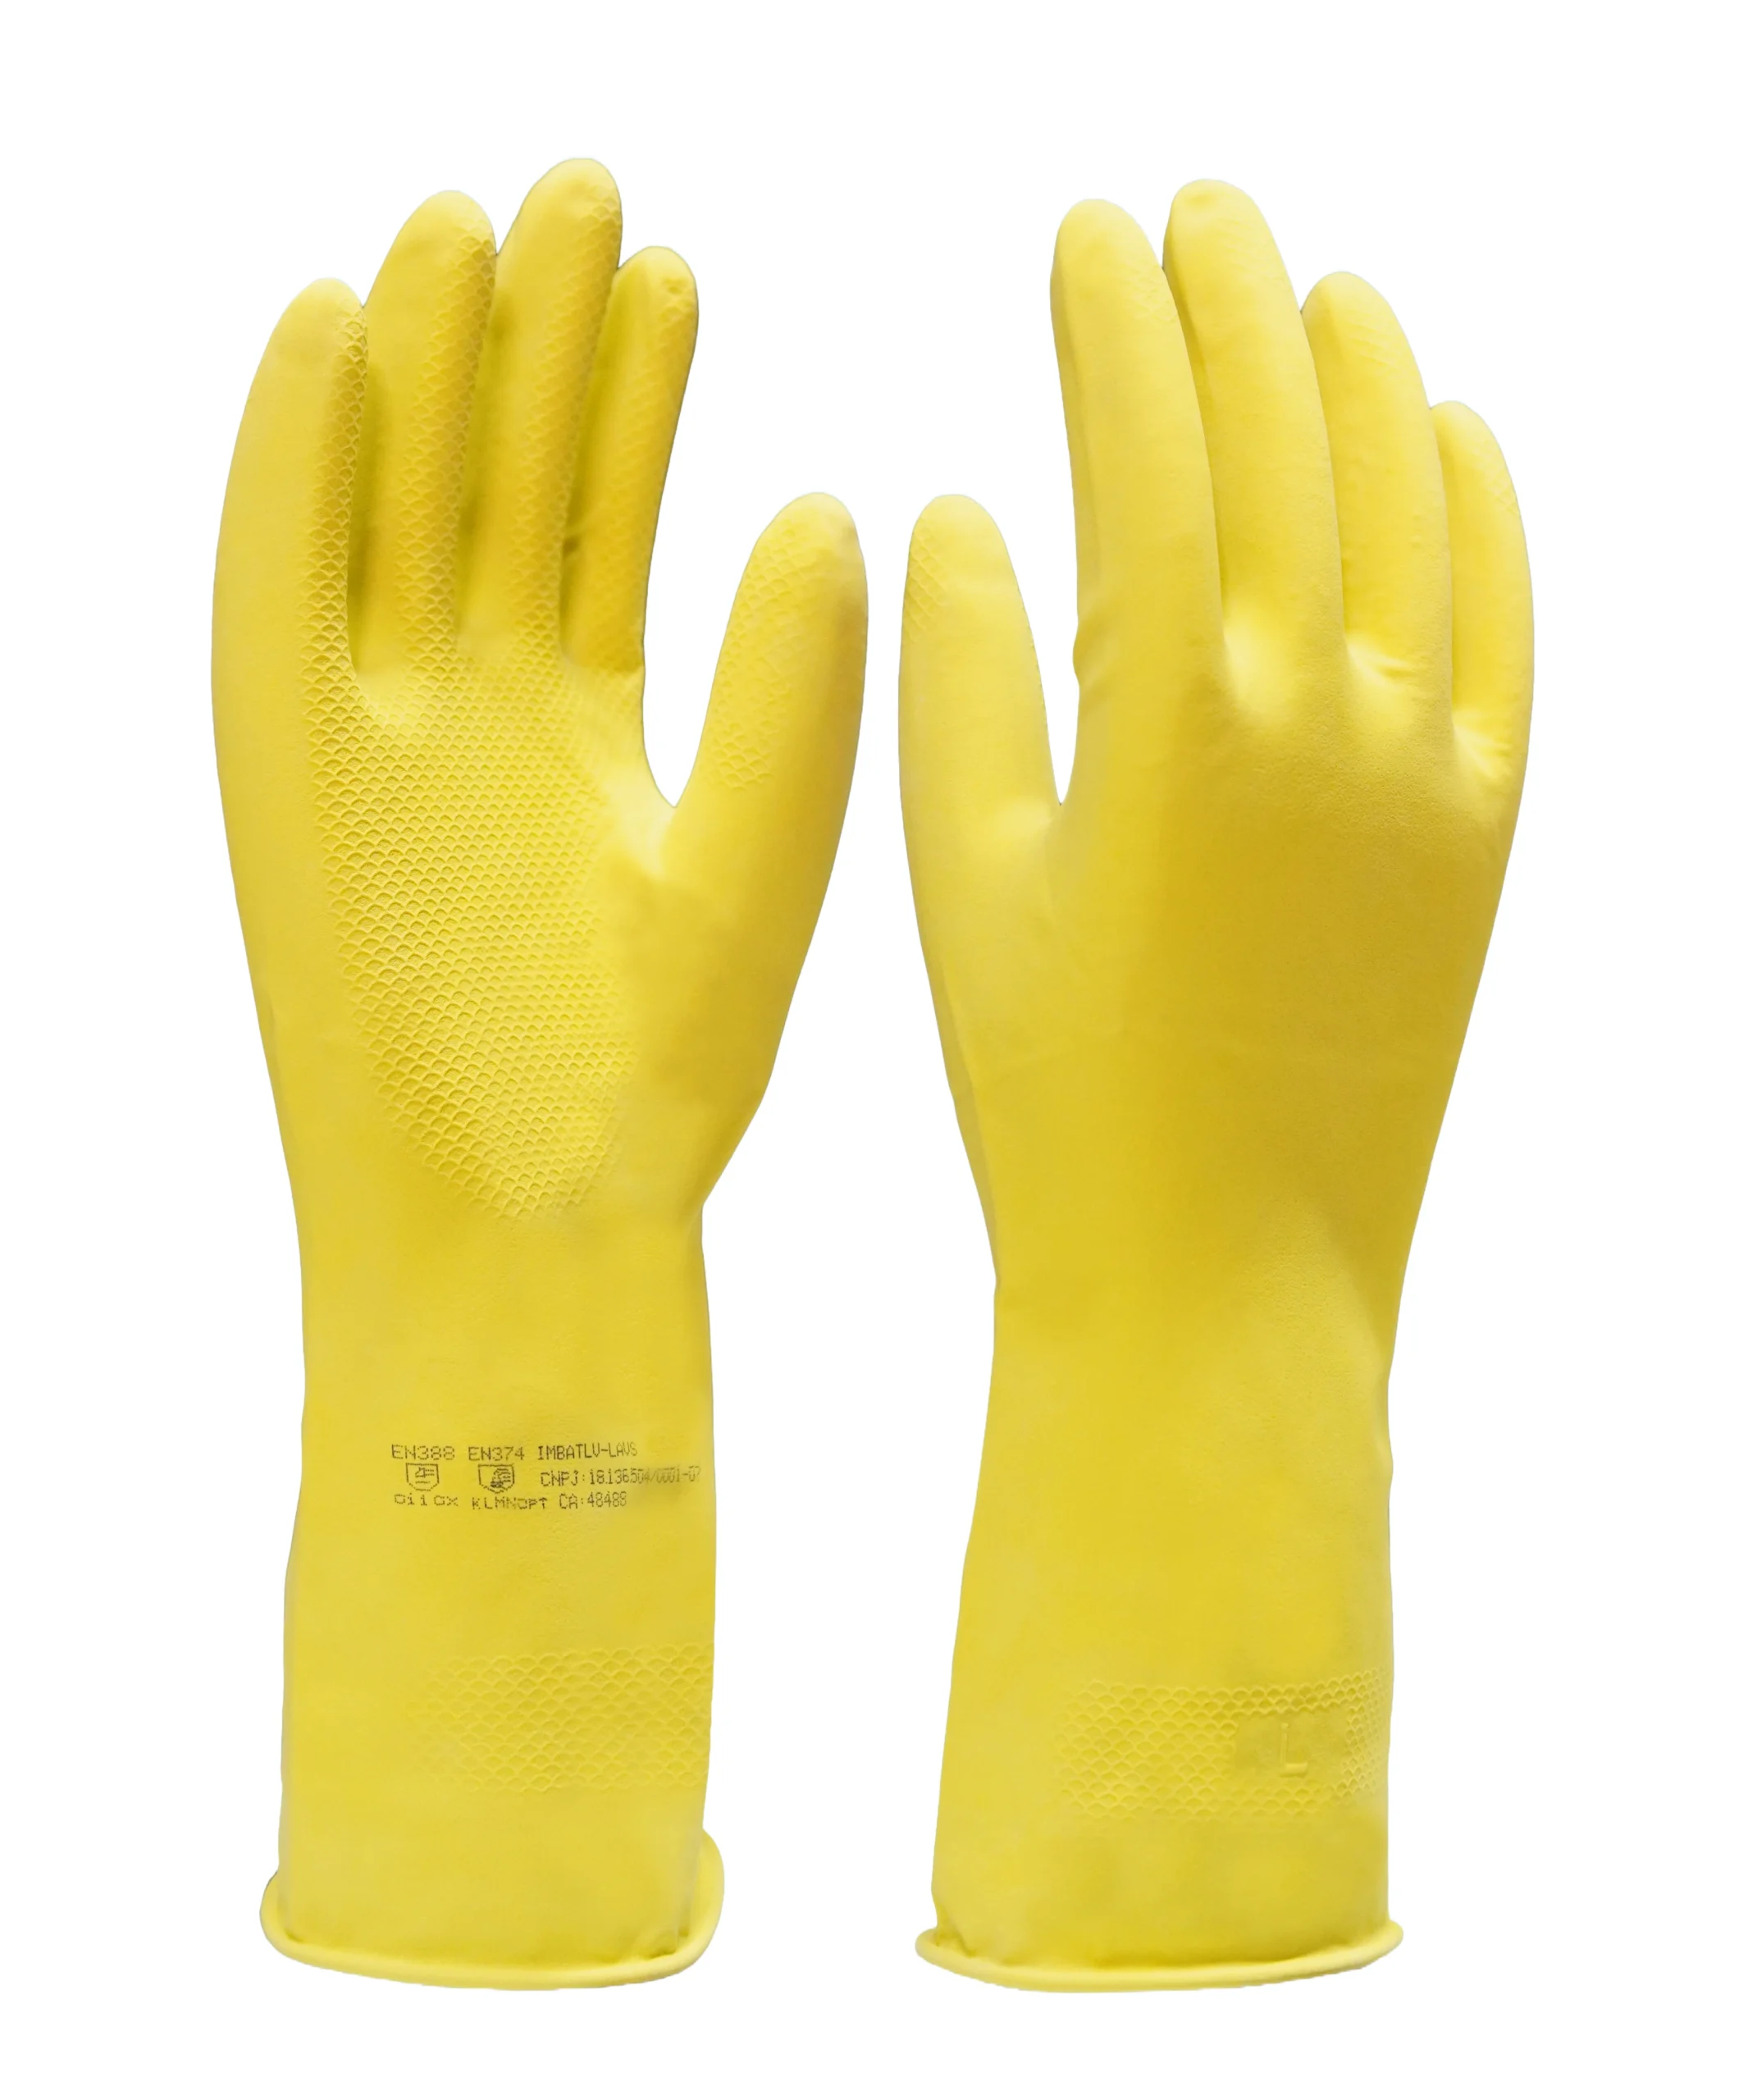 Luva de segurança confeccionada em látex natural na cor amarela, revestimento interno em verniz Silver, antiderrapante na palma e face palmar dos dedos. Tamanhos꞉ 7, 8, 9 e 10